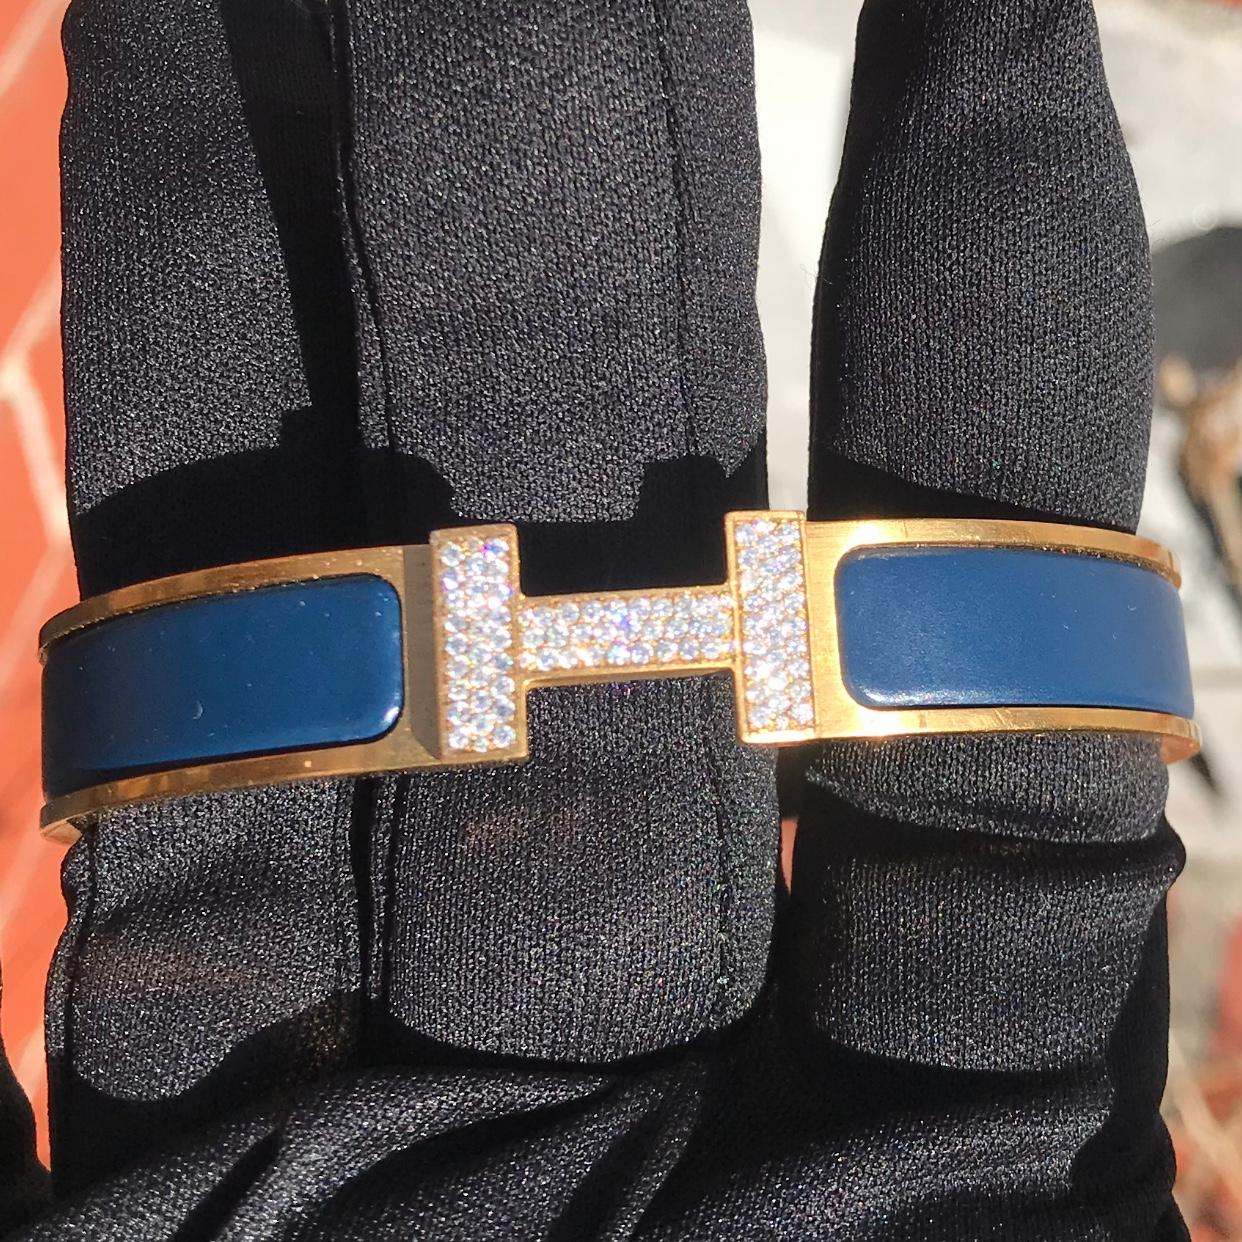 Custom Diamond Hermes Clic H Armband komplett mit Originalverpackung.

Ein originales Hermes Clic H Armband in der Größe GM in Blau und Gold ist individuell von Hand mit ca. 1,25 Karat echten, erdgeschliffenen VS-SI Diamanten besetzt. Die Diamanten